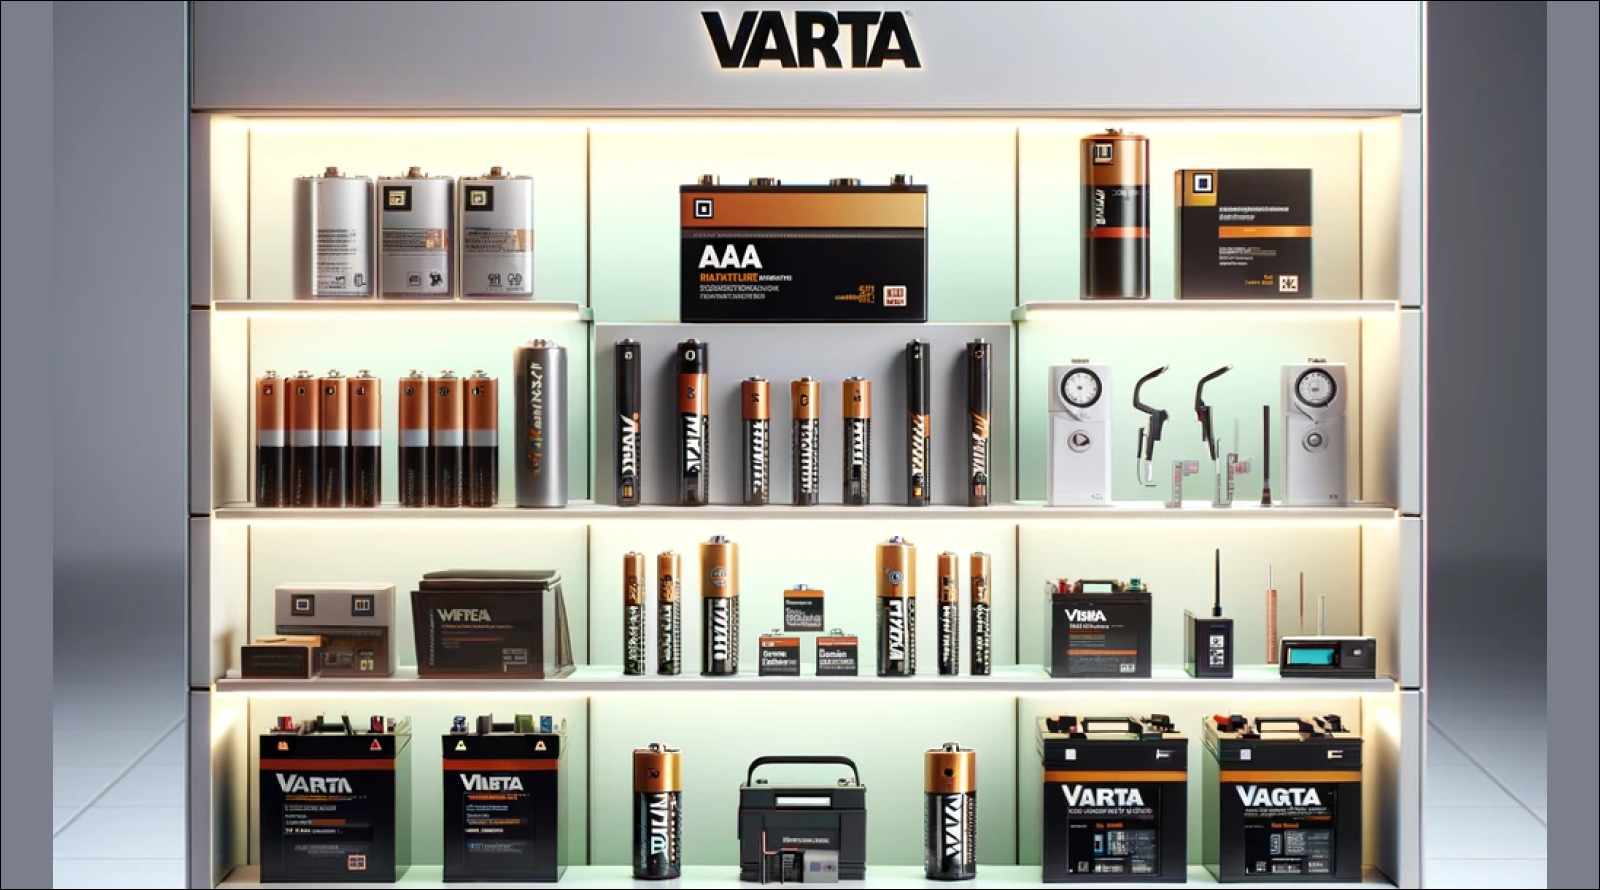 eine Auswahl von Varta-Produkten, darunter verschiedene Batterietypen und Elektronikzubehör, die auf einem beleuchteten Verkaufsregal präsentiert werden